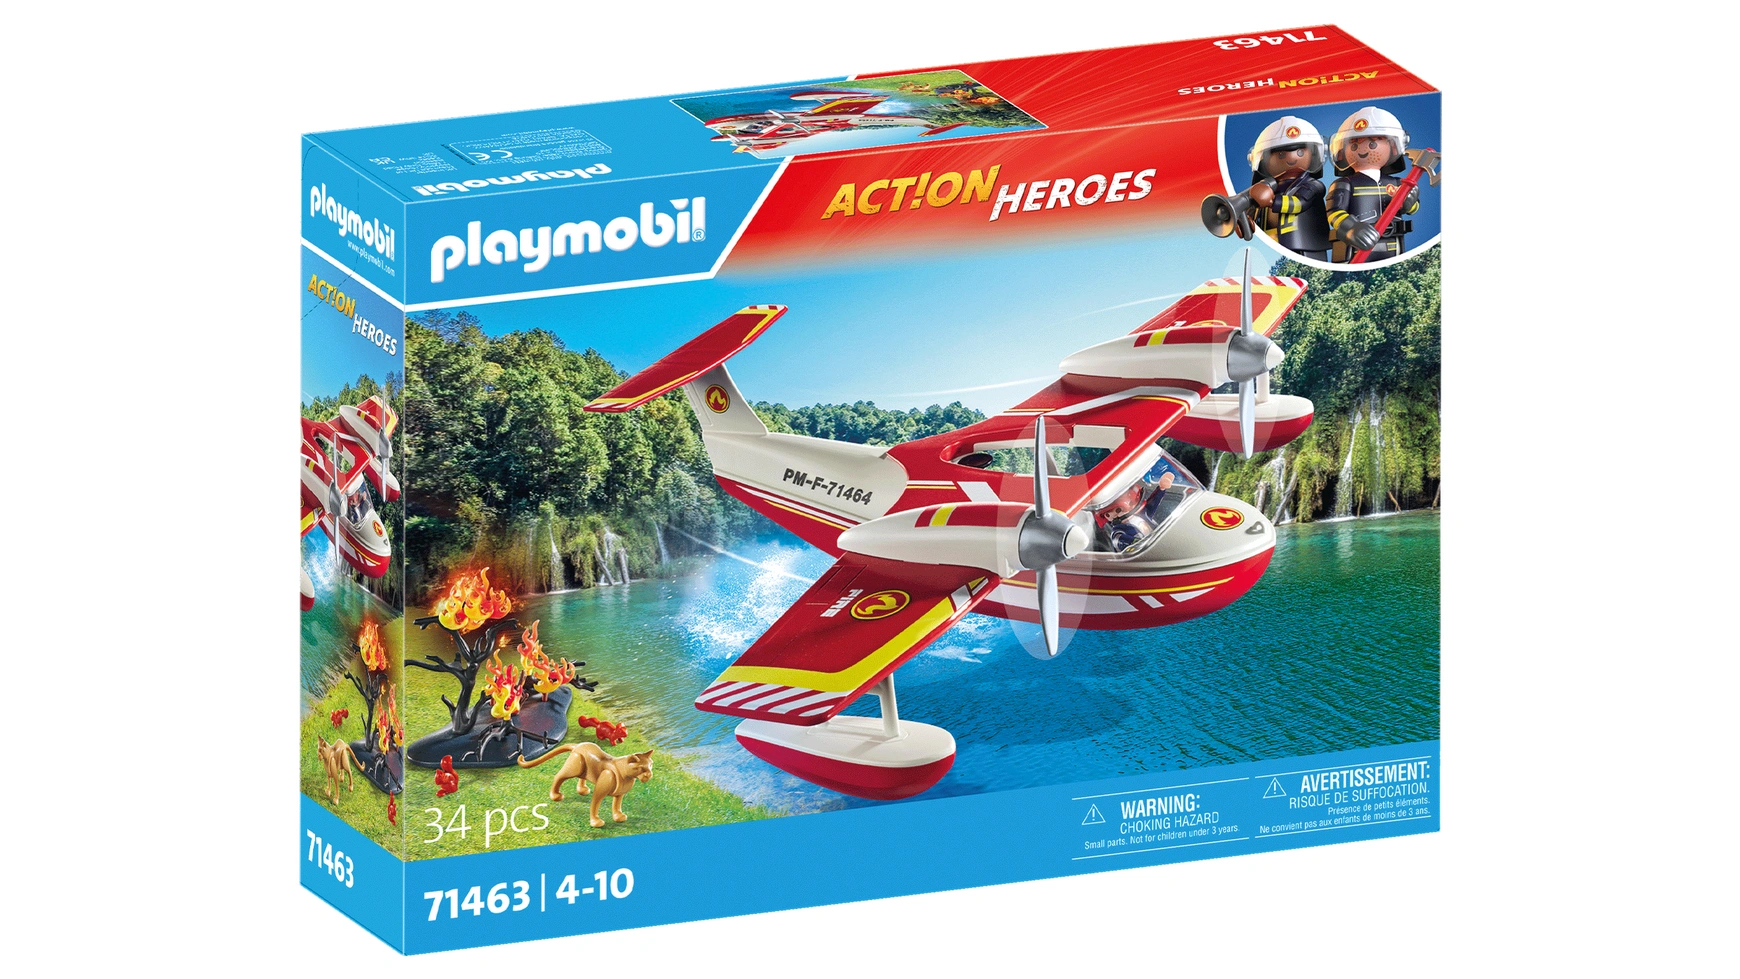 игрушки playmobil pm9470 убежище кристального алмаза Action heroes пожарный самолет с функцией тушения Playmobil